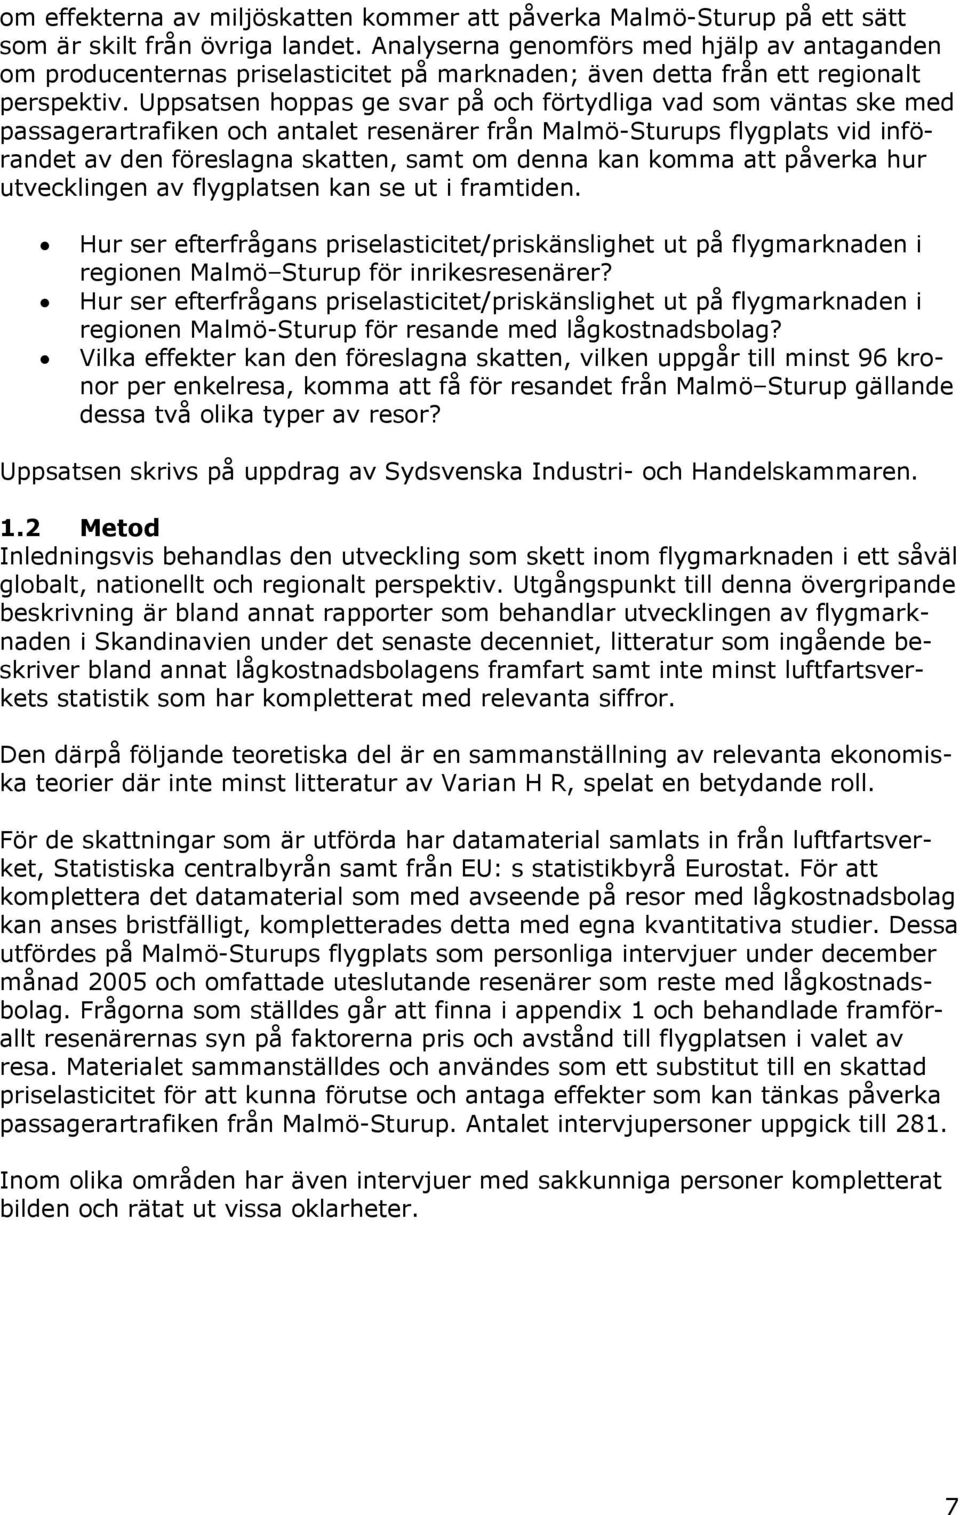 Uppsatsen hoppas ge svar på och förtydliga vad som väntas ske med passagerartrafiken och antalet resenärer från Malmö-Sturups flygplats vid införandet av den föreslagna skatten, samt om denna kan